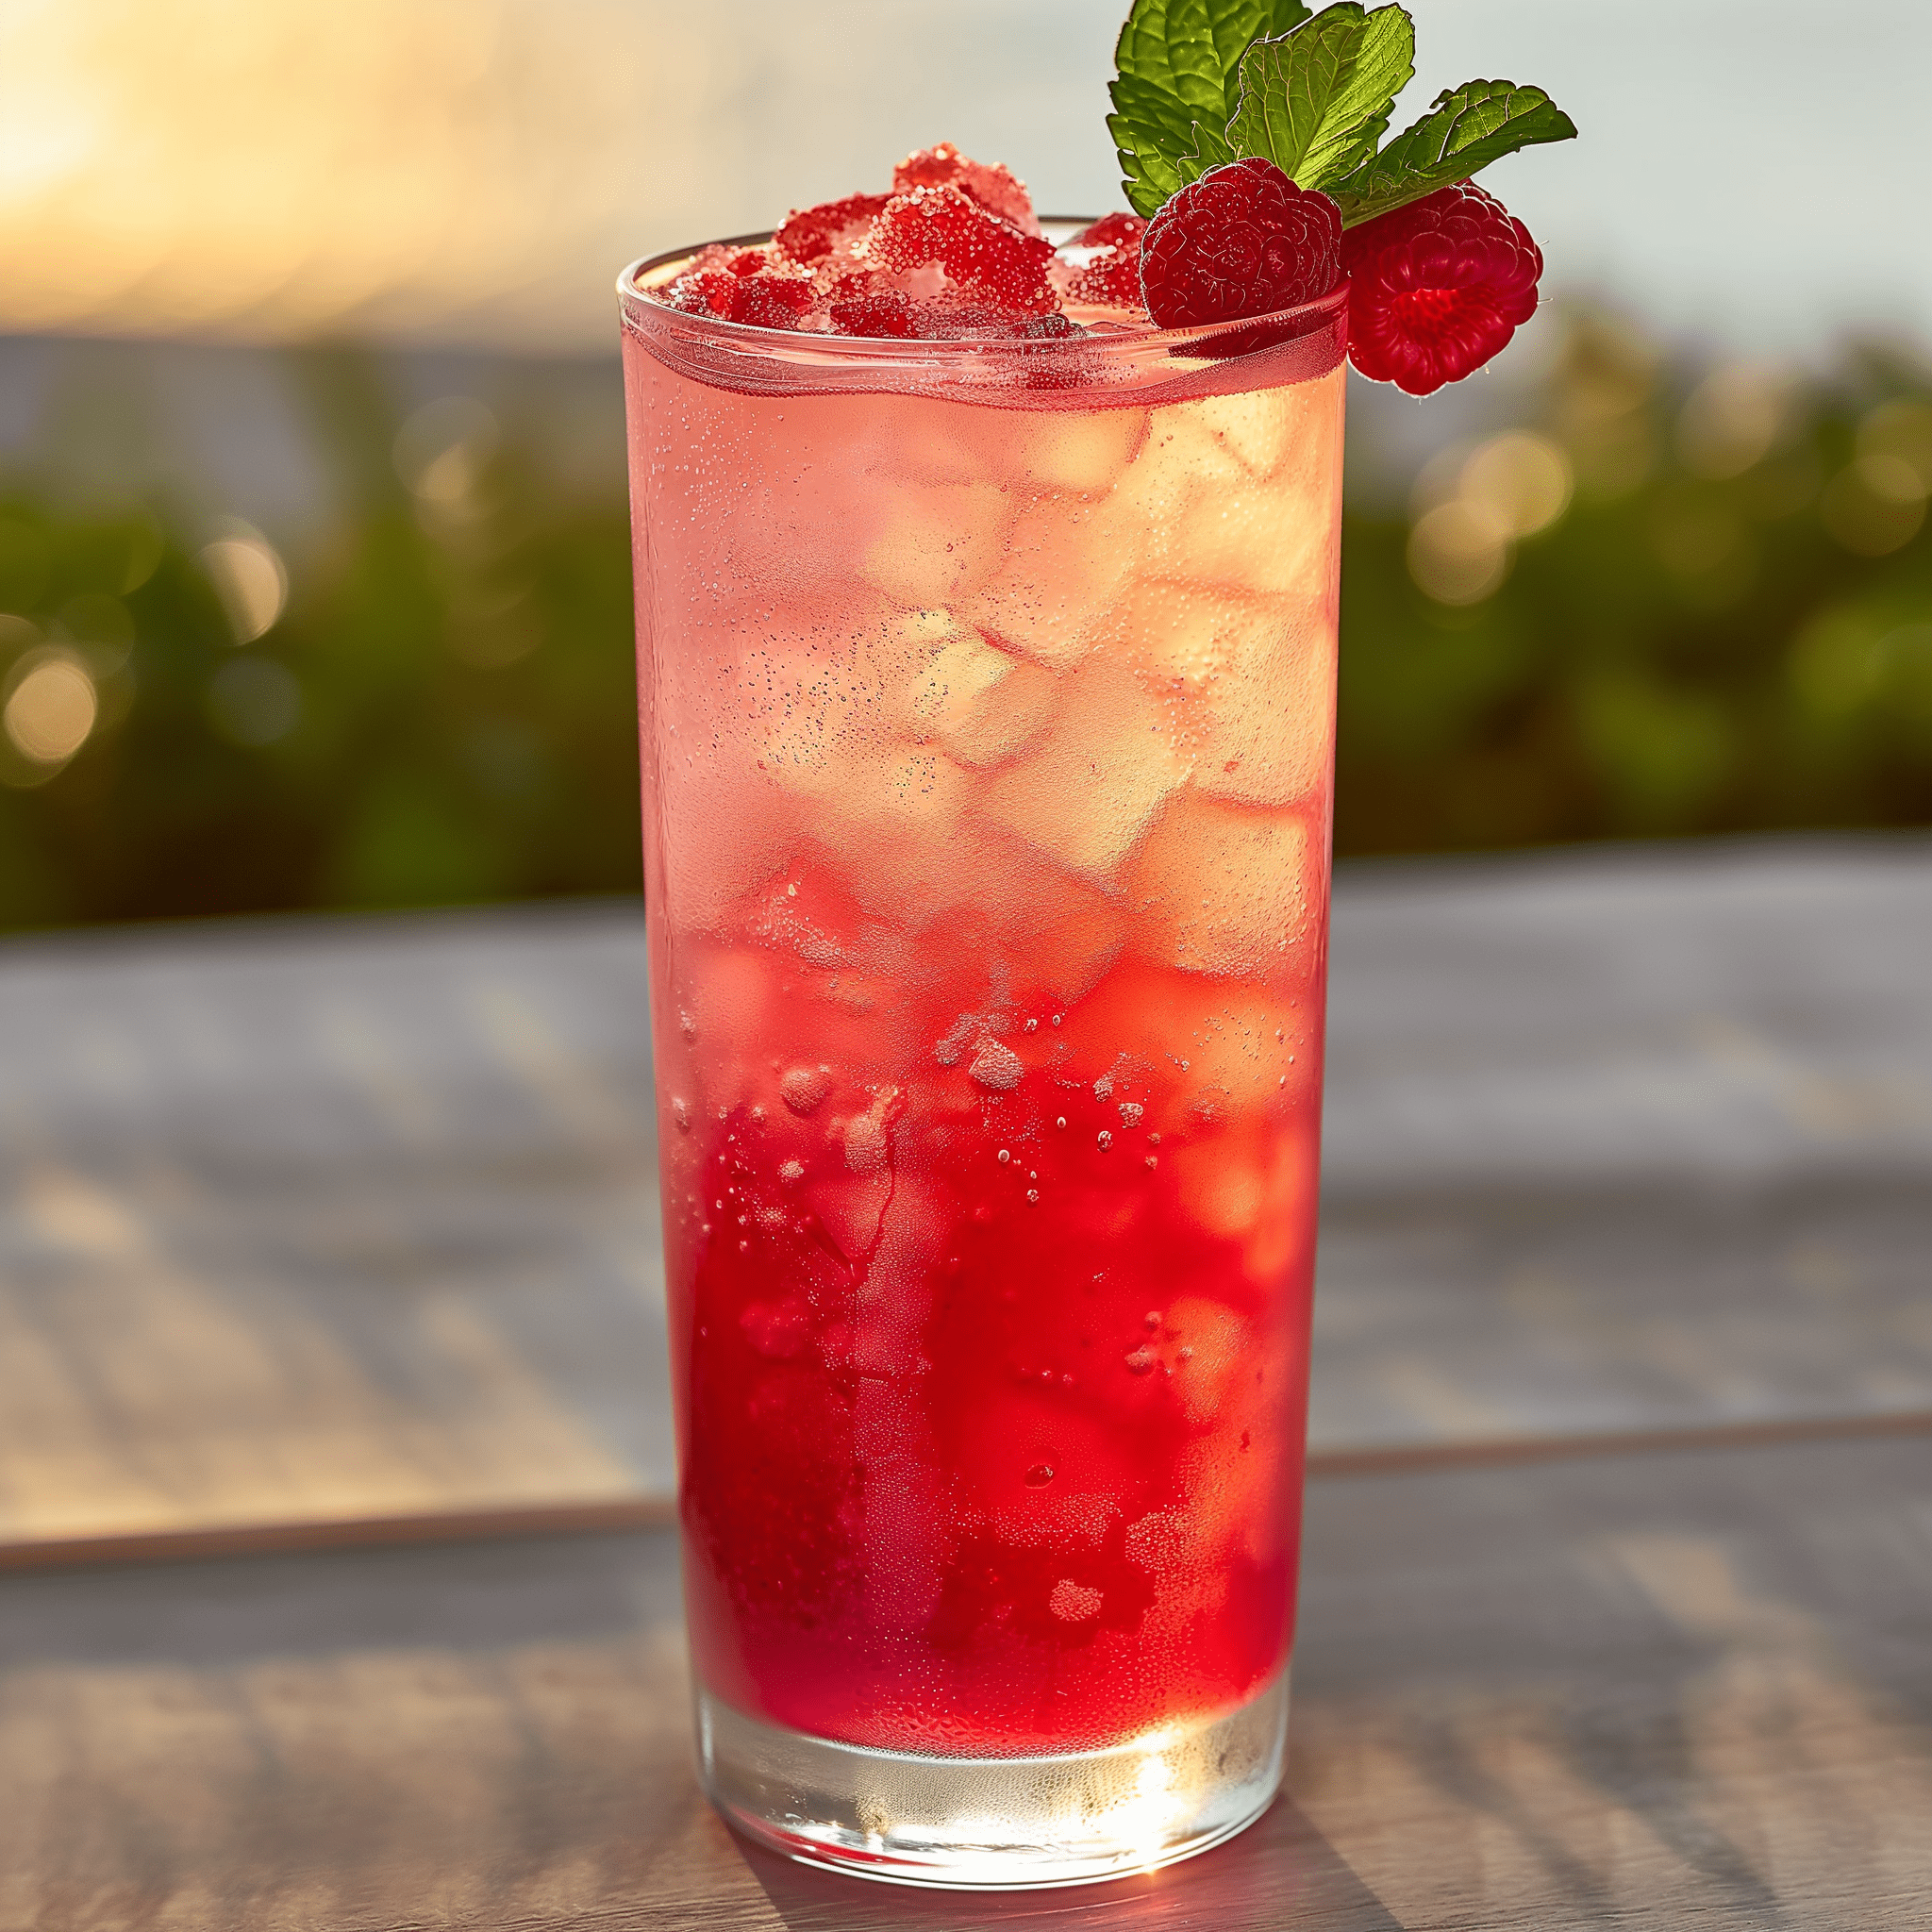 Raspberry Lemonade Cóctel Receta - El cóctel Raspberry Lemonade es una armoniosa mezcla de dulces frambuesas y ácido limón, creando un sabor refrescantemente cítrico que baila en el paladar. Es ligero, estimulante y tiene un sutil toque de menta que complementa la frutosidad.